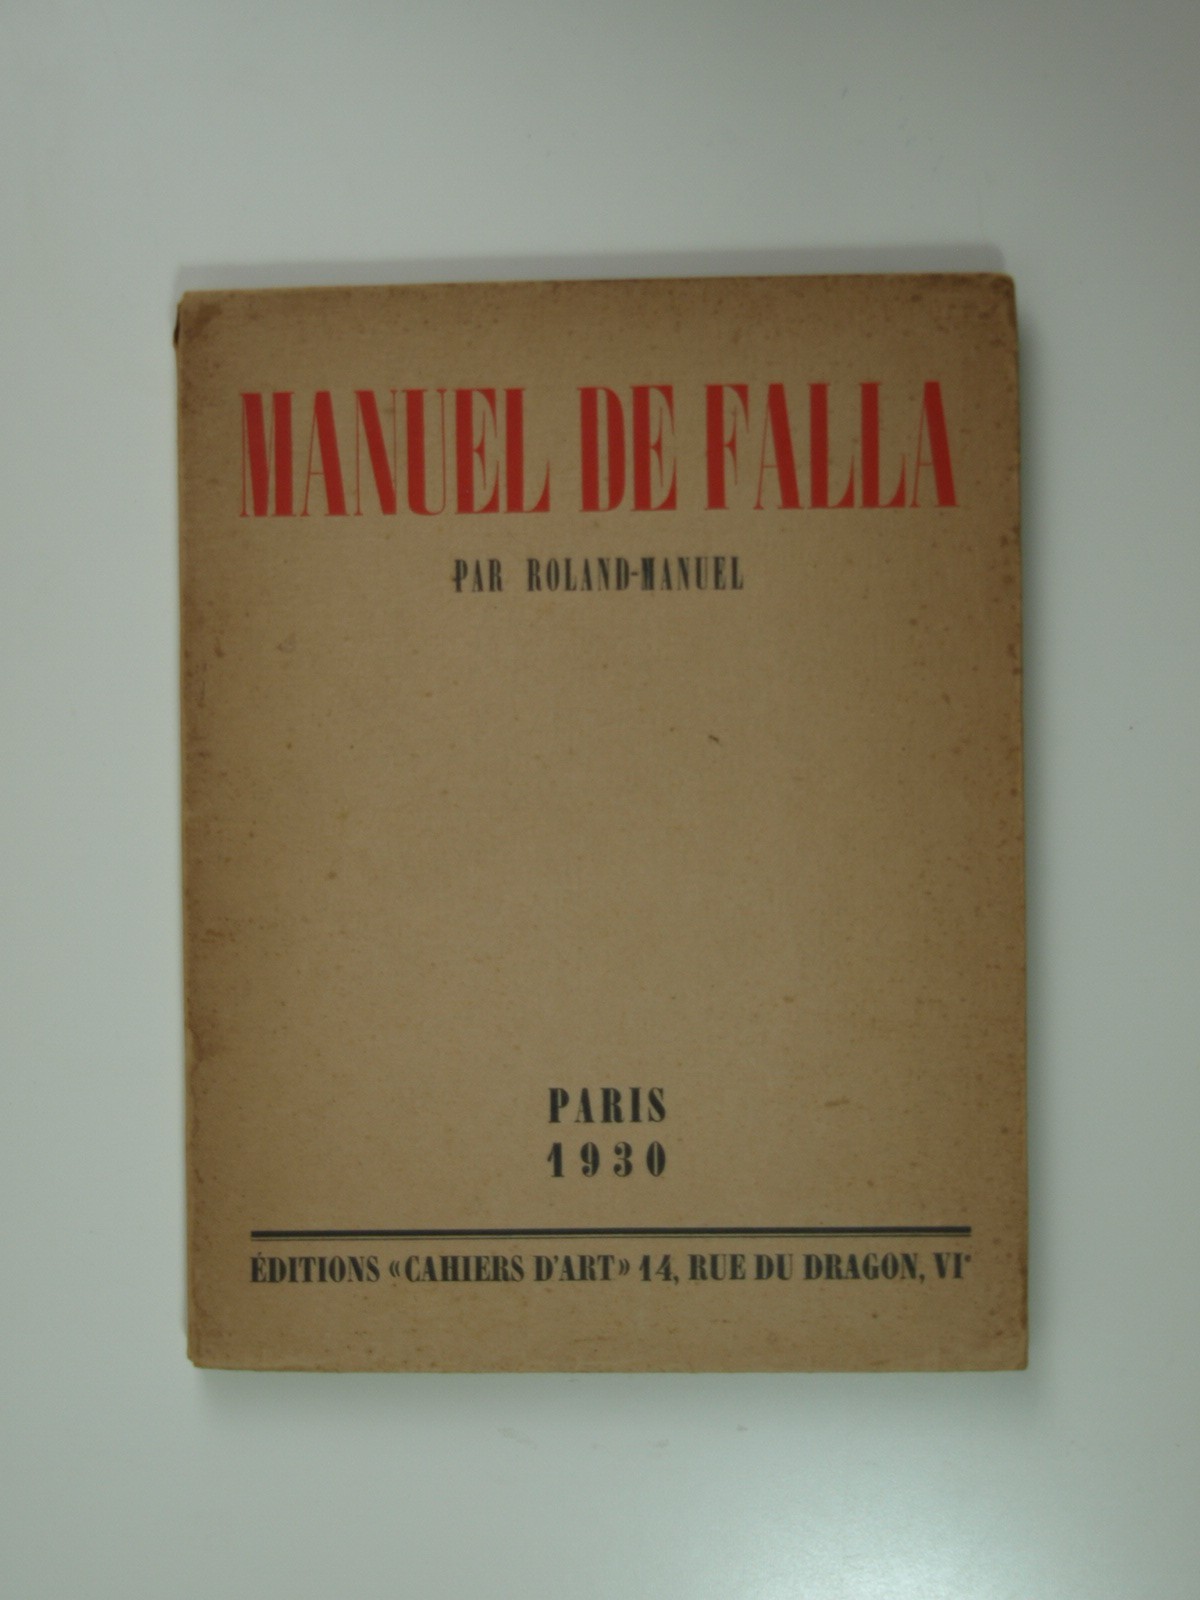 Roland-Manuel : Manuel de Falla